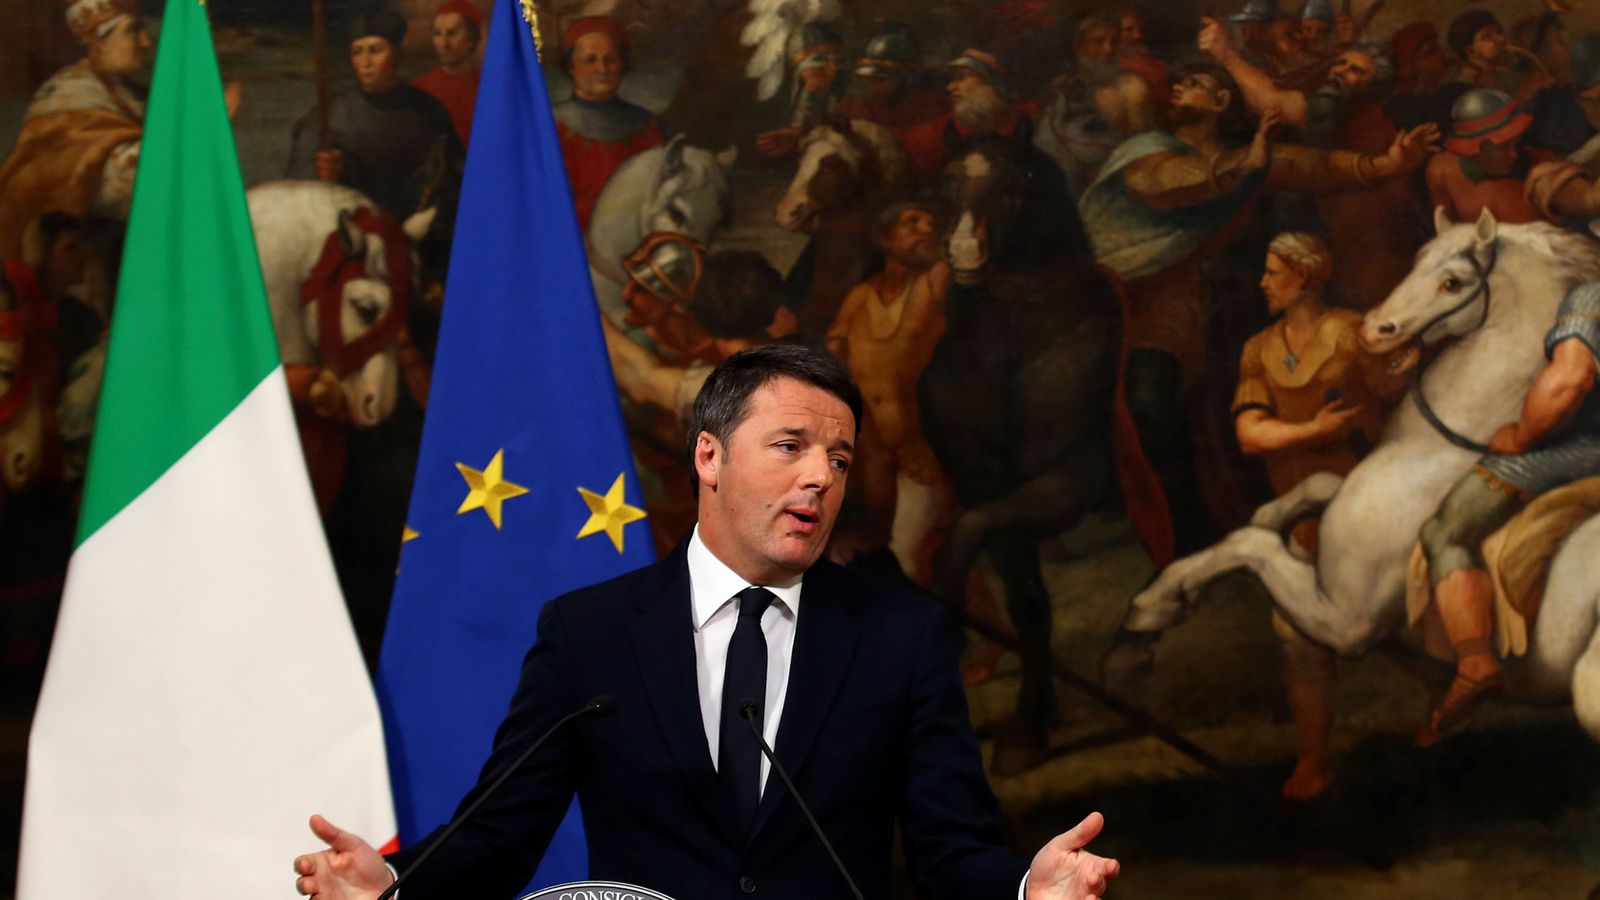 Foto: Matteo Renzi durante la rueda de prensa posterior al referéndum sobre la reforma constitucional. (Reuters)